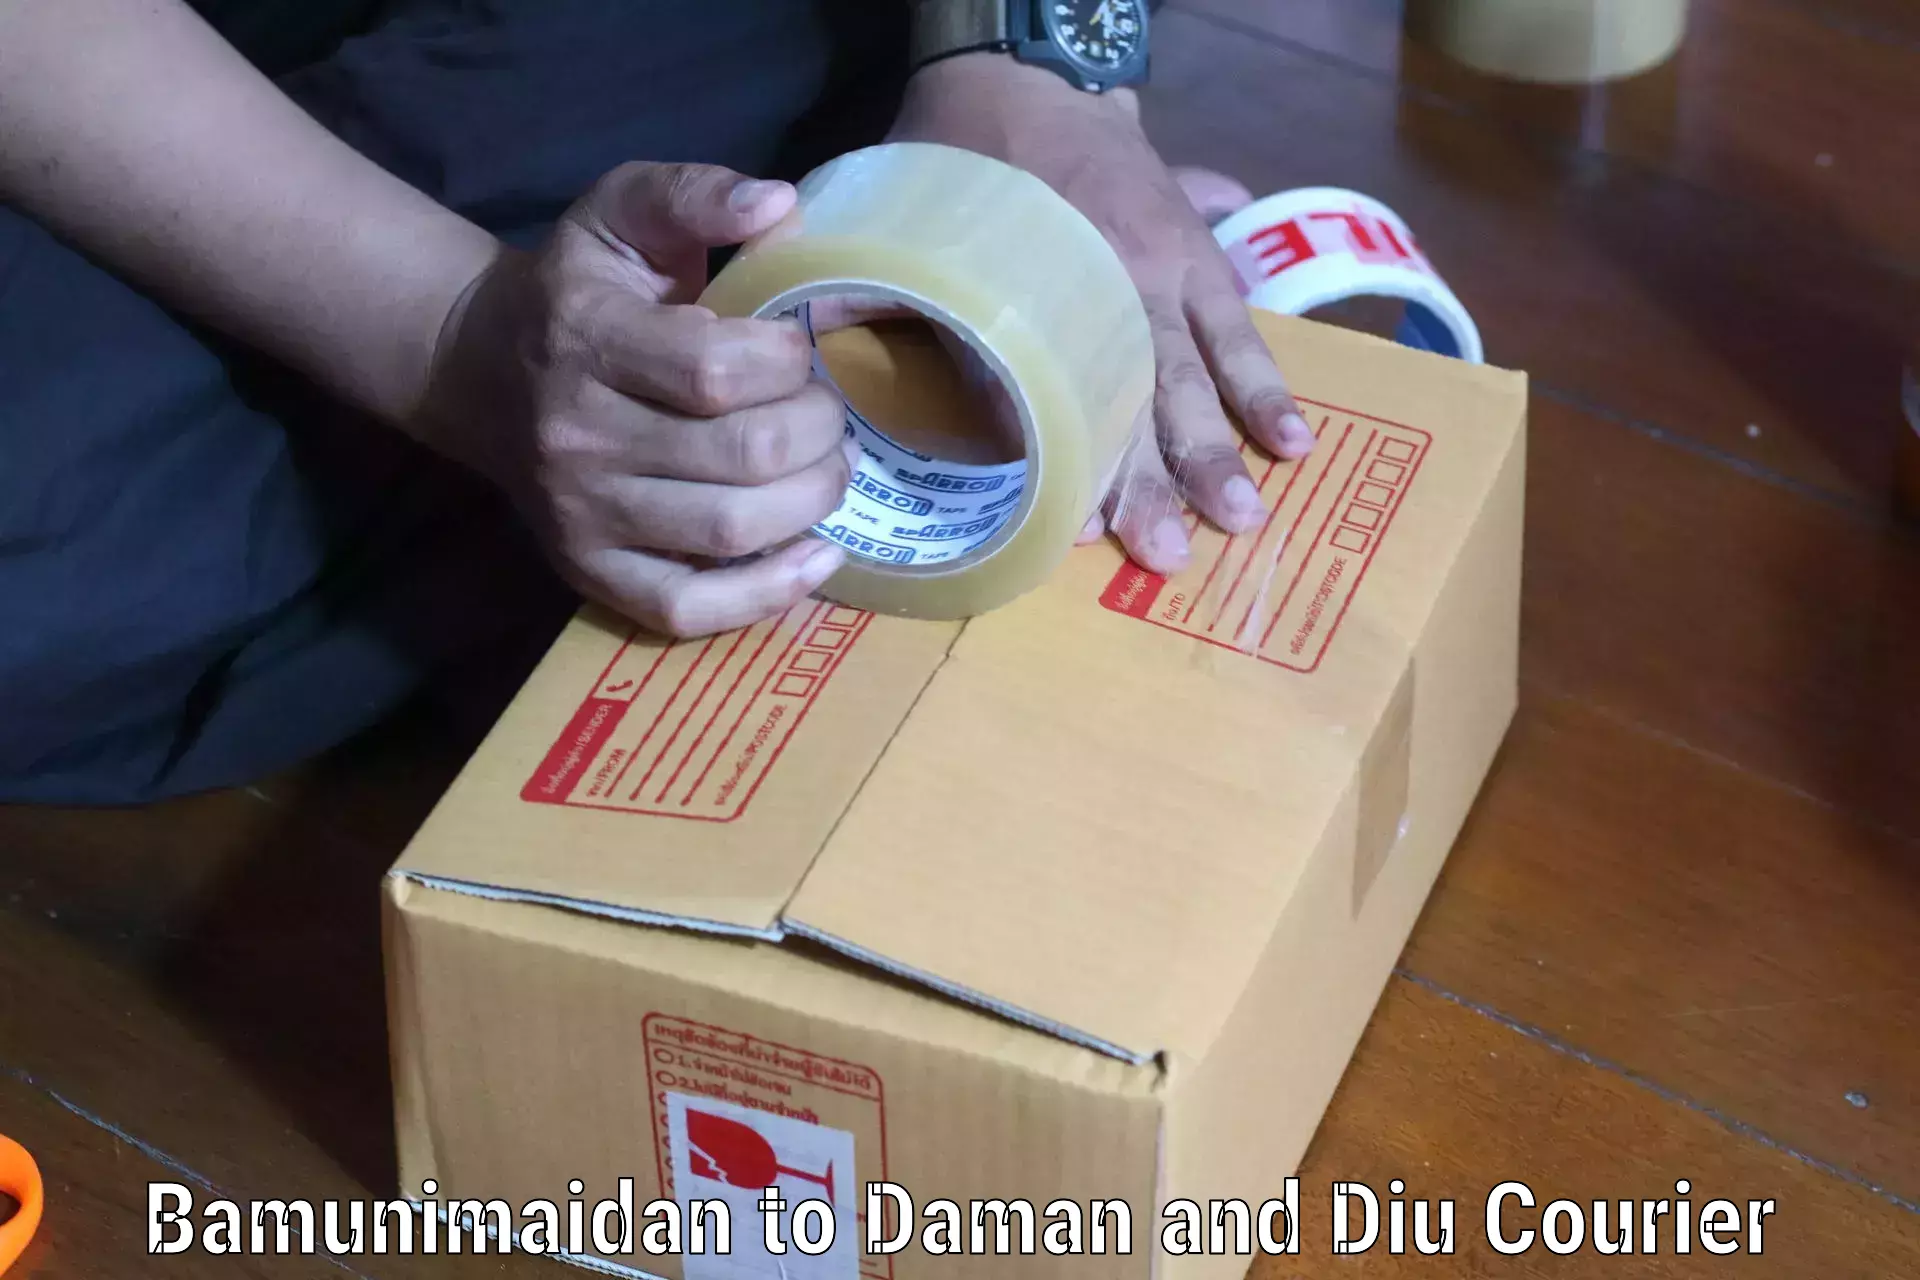 Lightweight parcel options Bamunimaidan to Daman and Diu